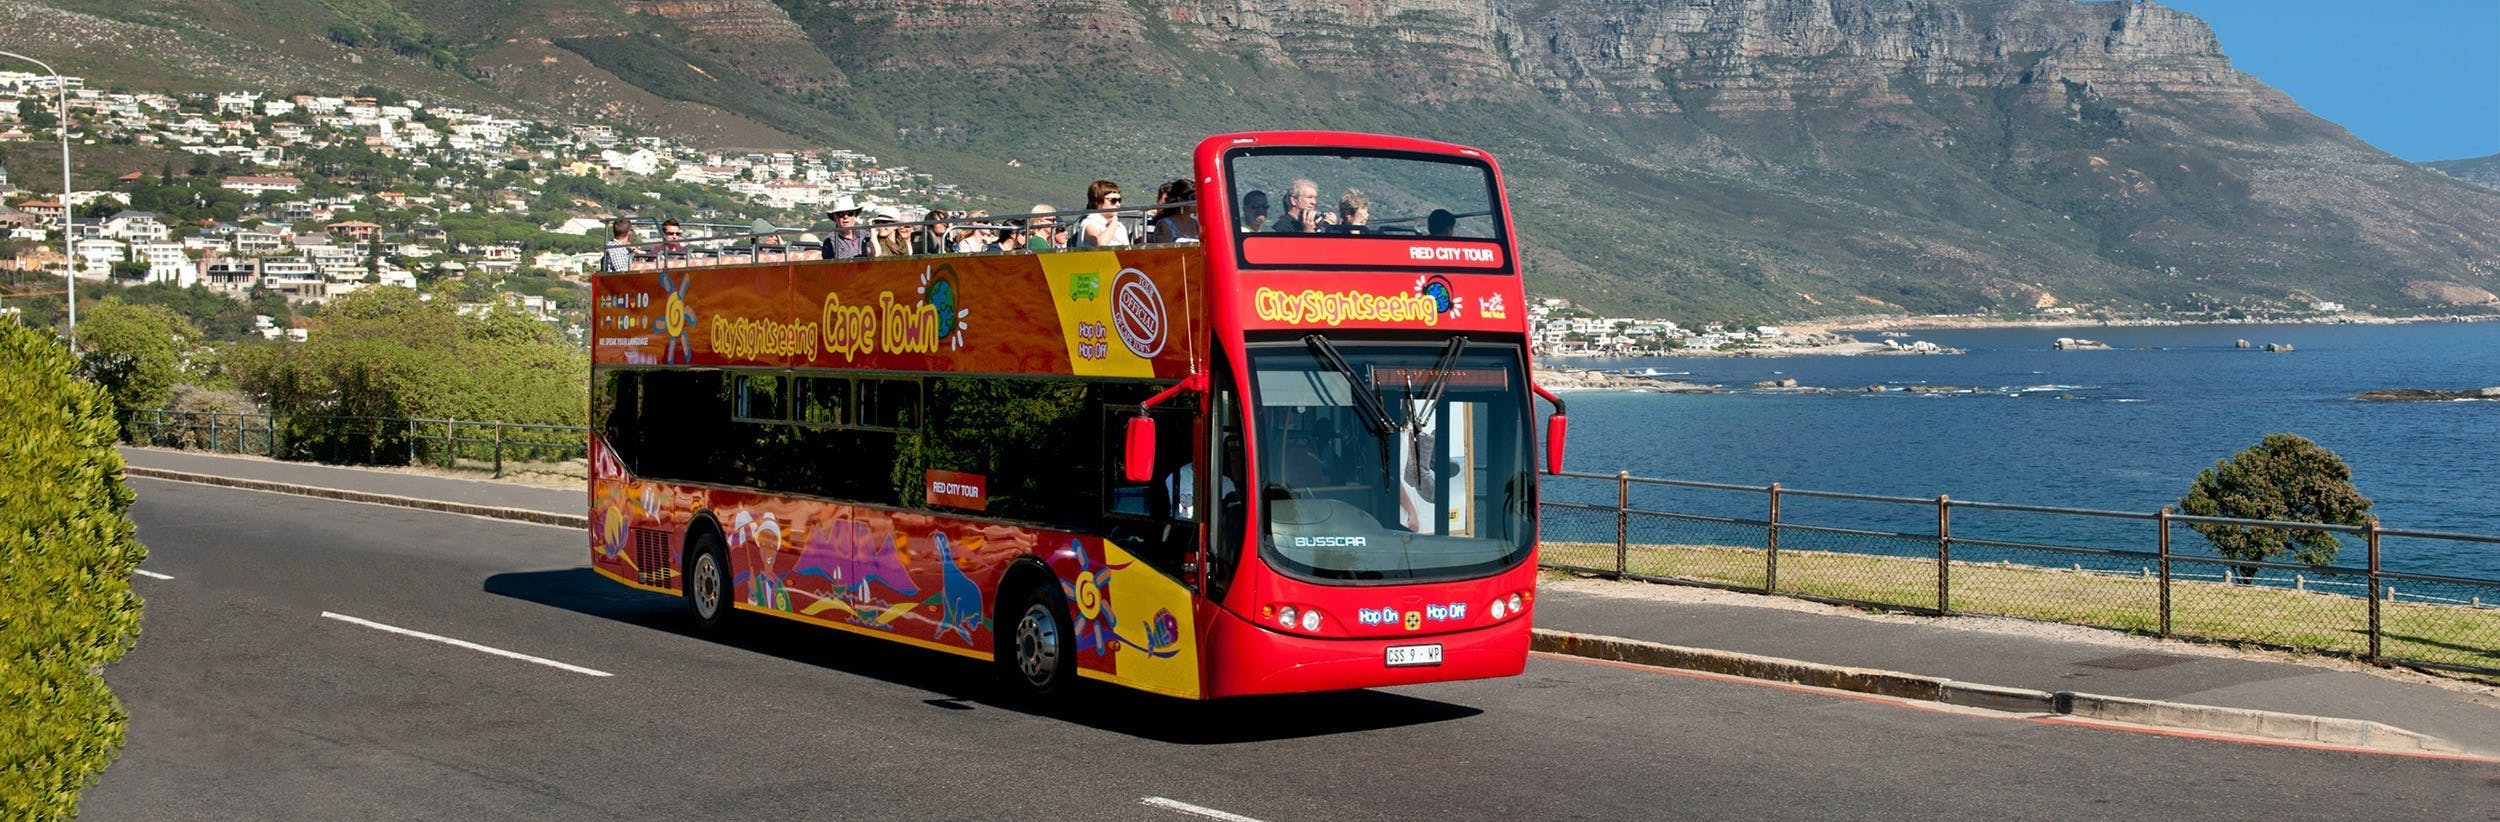 Billetes de 1 día para el autobús turístico City Sightseeing en Ciudad del Cabo